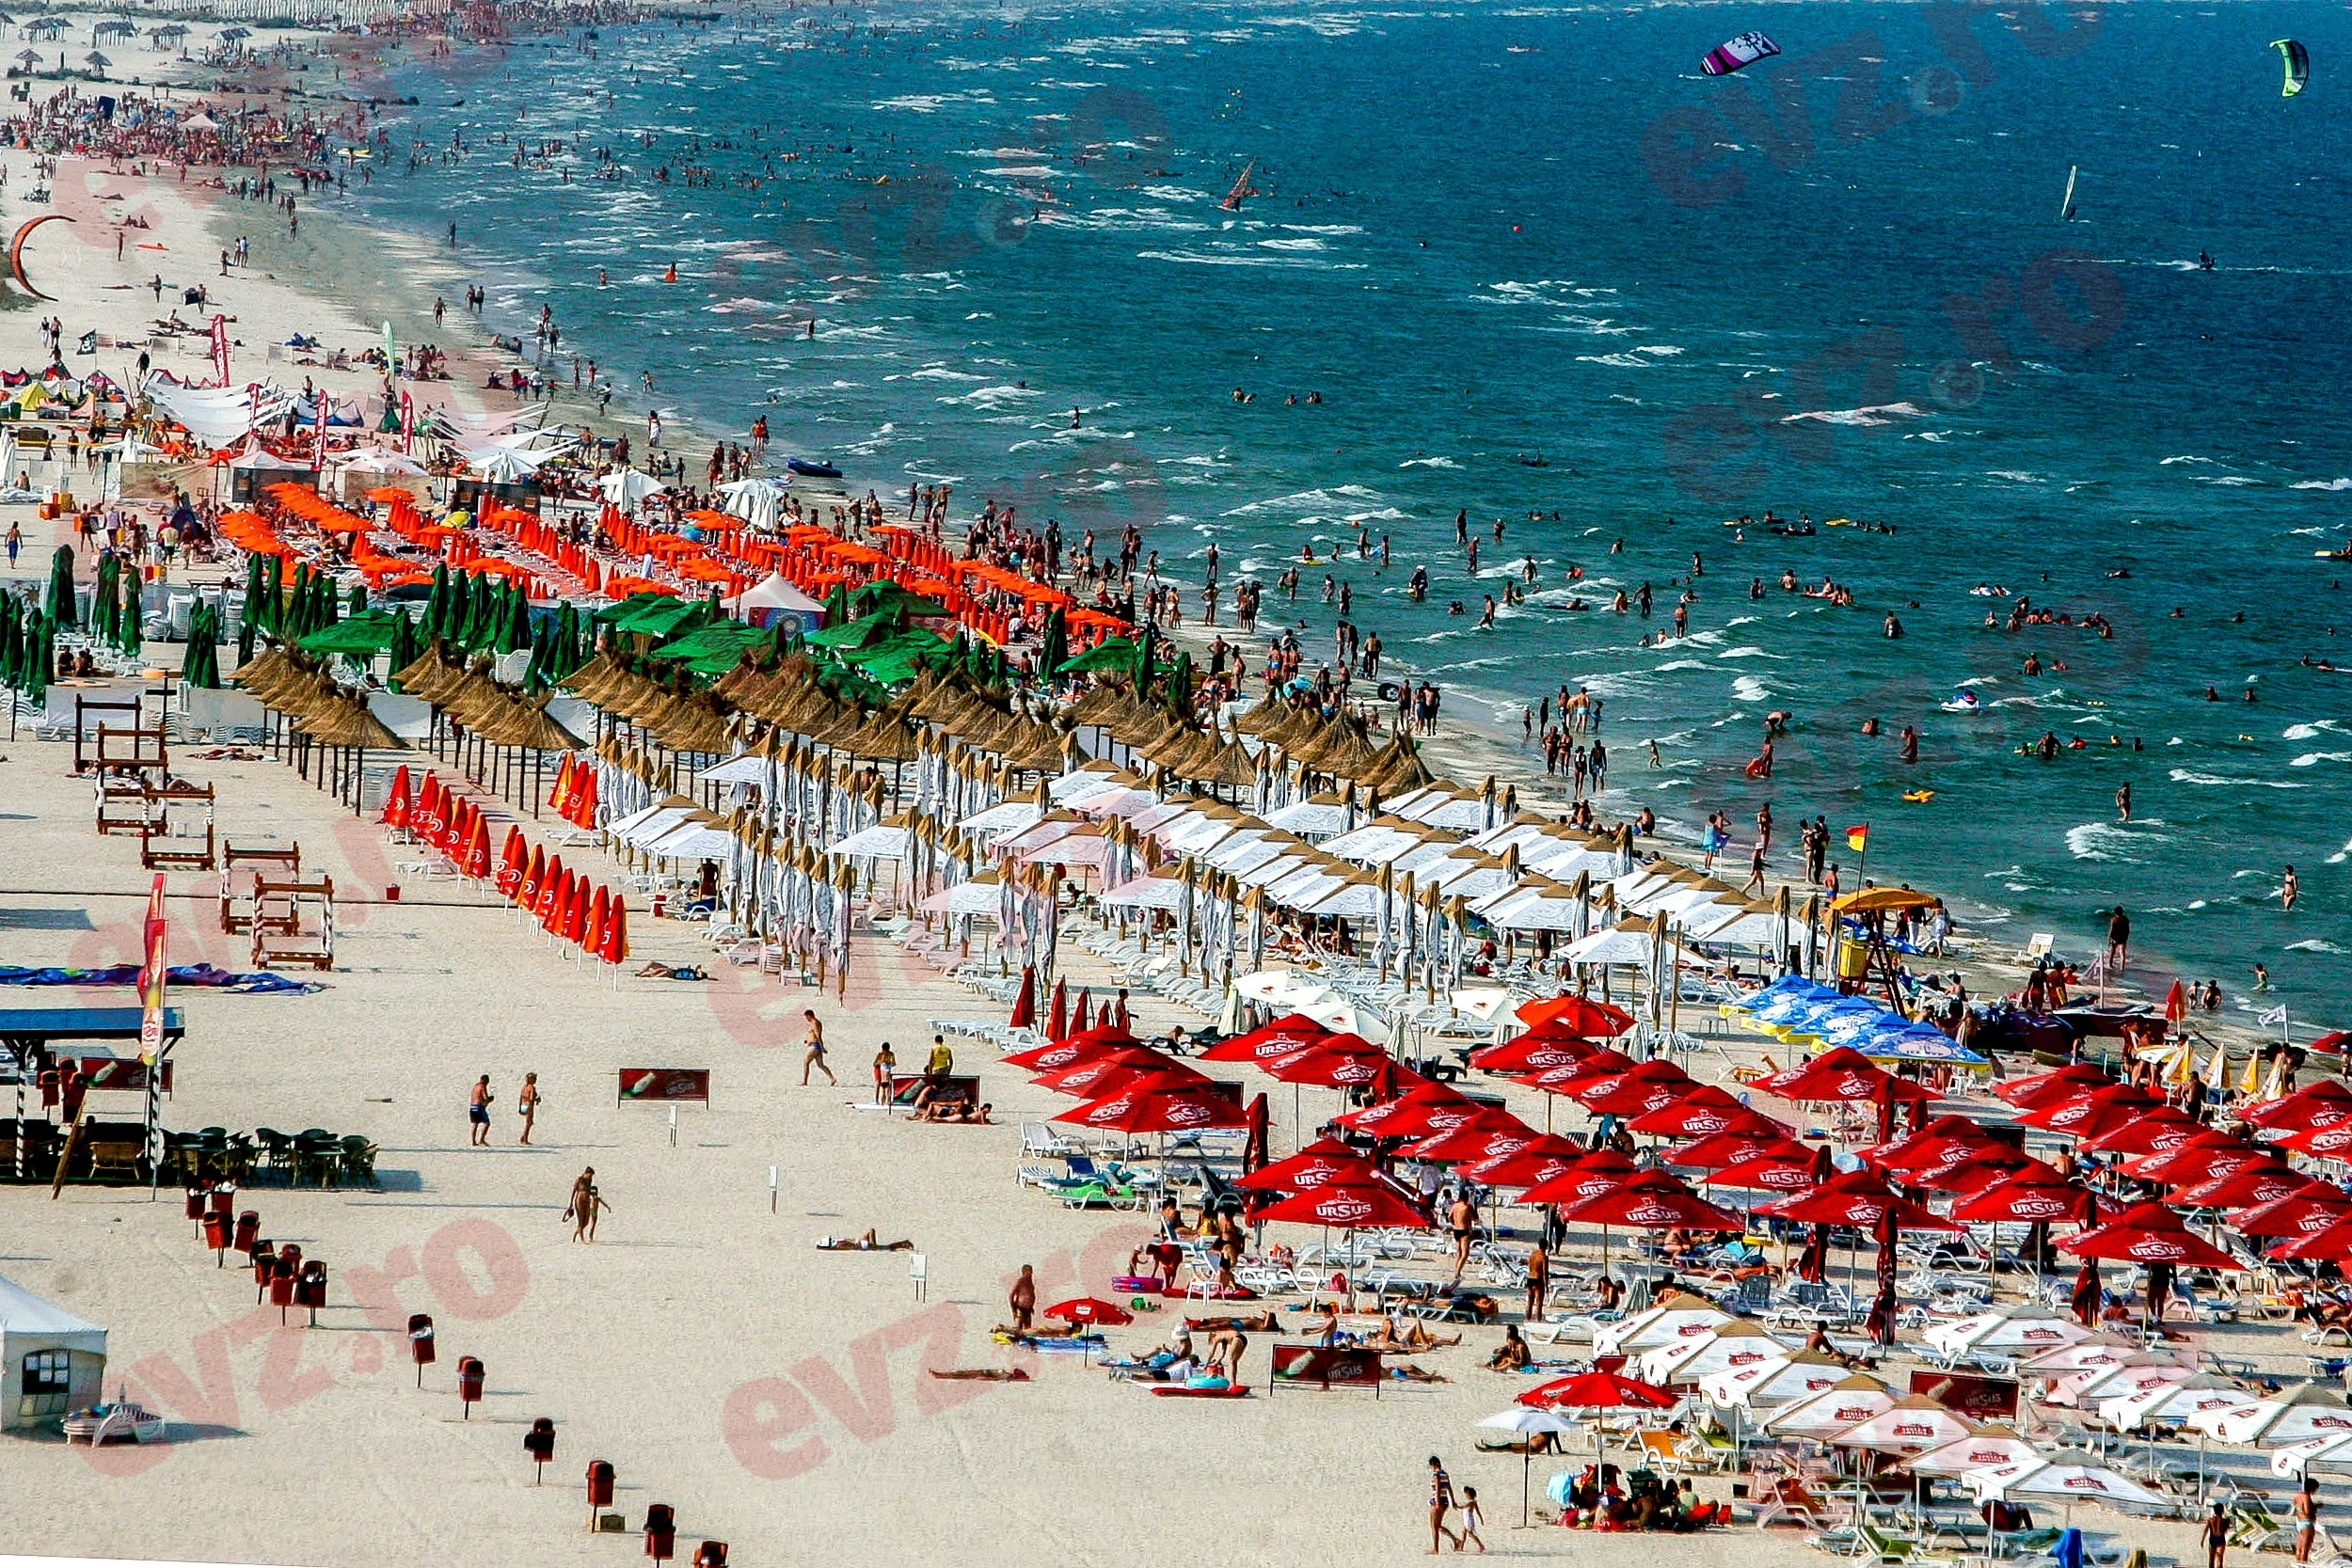 Πόσο κοστίζουν οι διακοπές στην παραλία στη Ρουμανία, τη Βουλγαρία, την Ελλάδα ή την Τουρκία;  Ποιος προορισμός έχει δει τις μεγαλύτερες αυξήσεις τιμών;